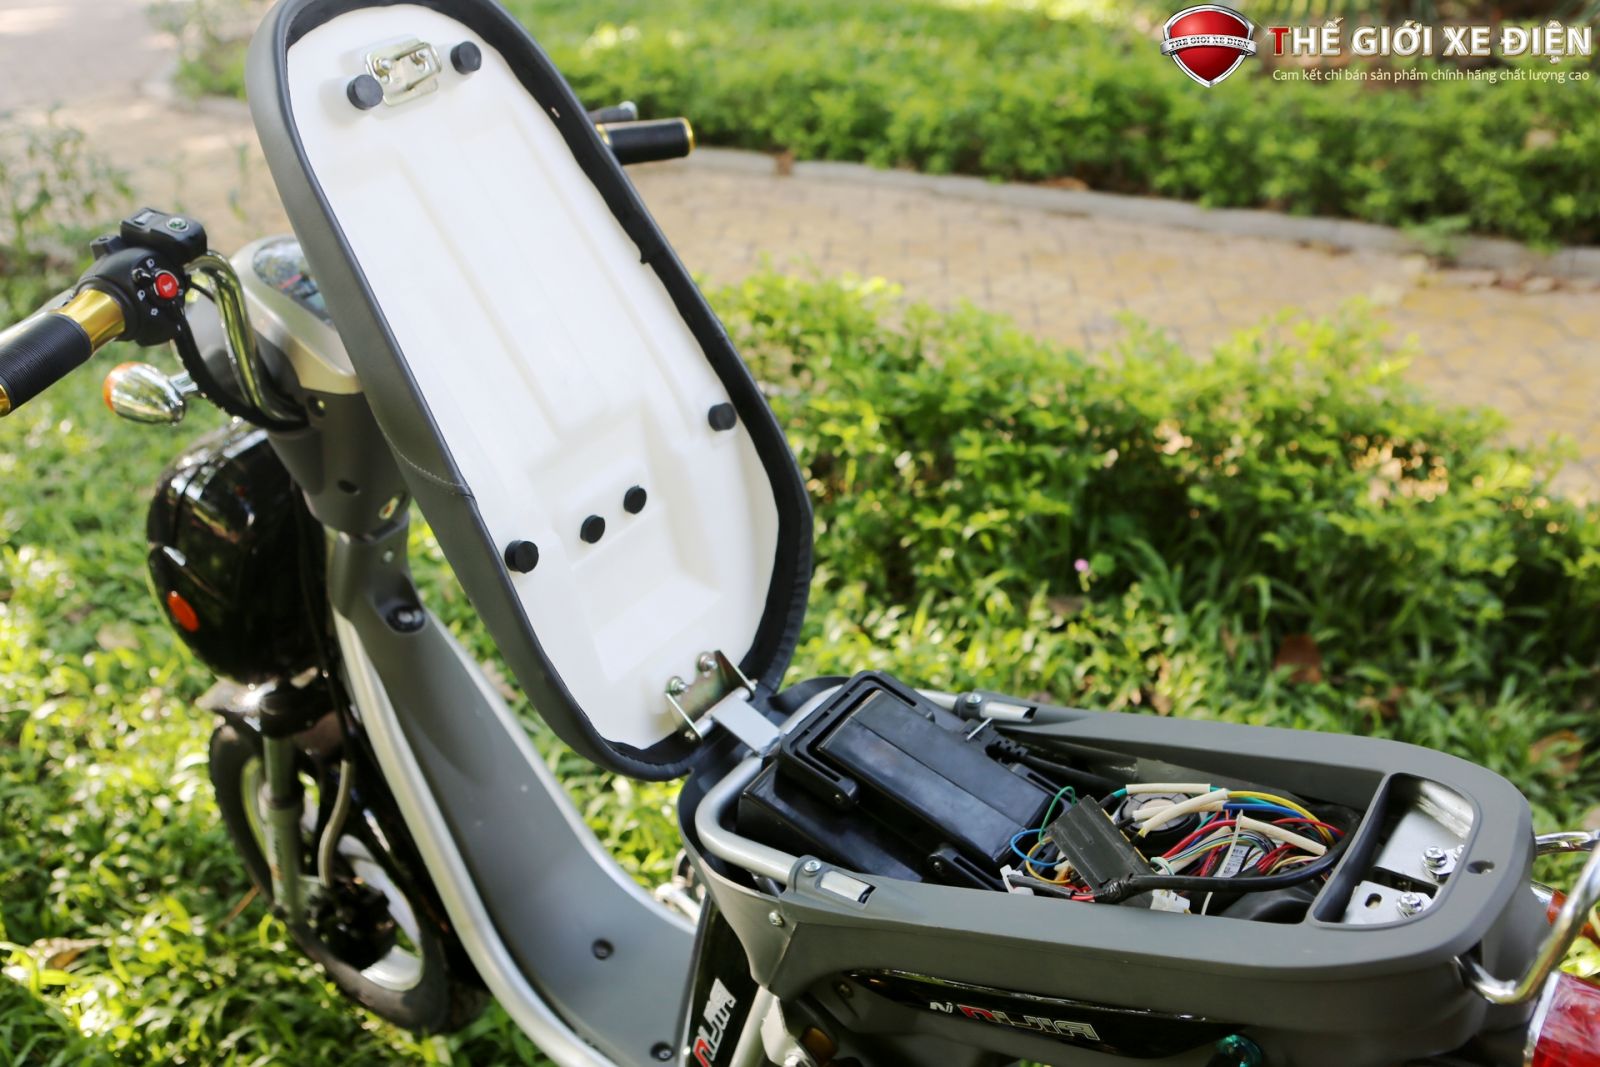 Sạc xe đạp điện năng lượng điện bị hỏng nguyên vẹn nhân và cơ hội xử lý  Xediencu66com